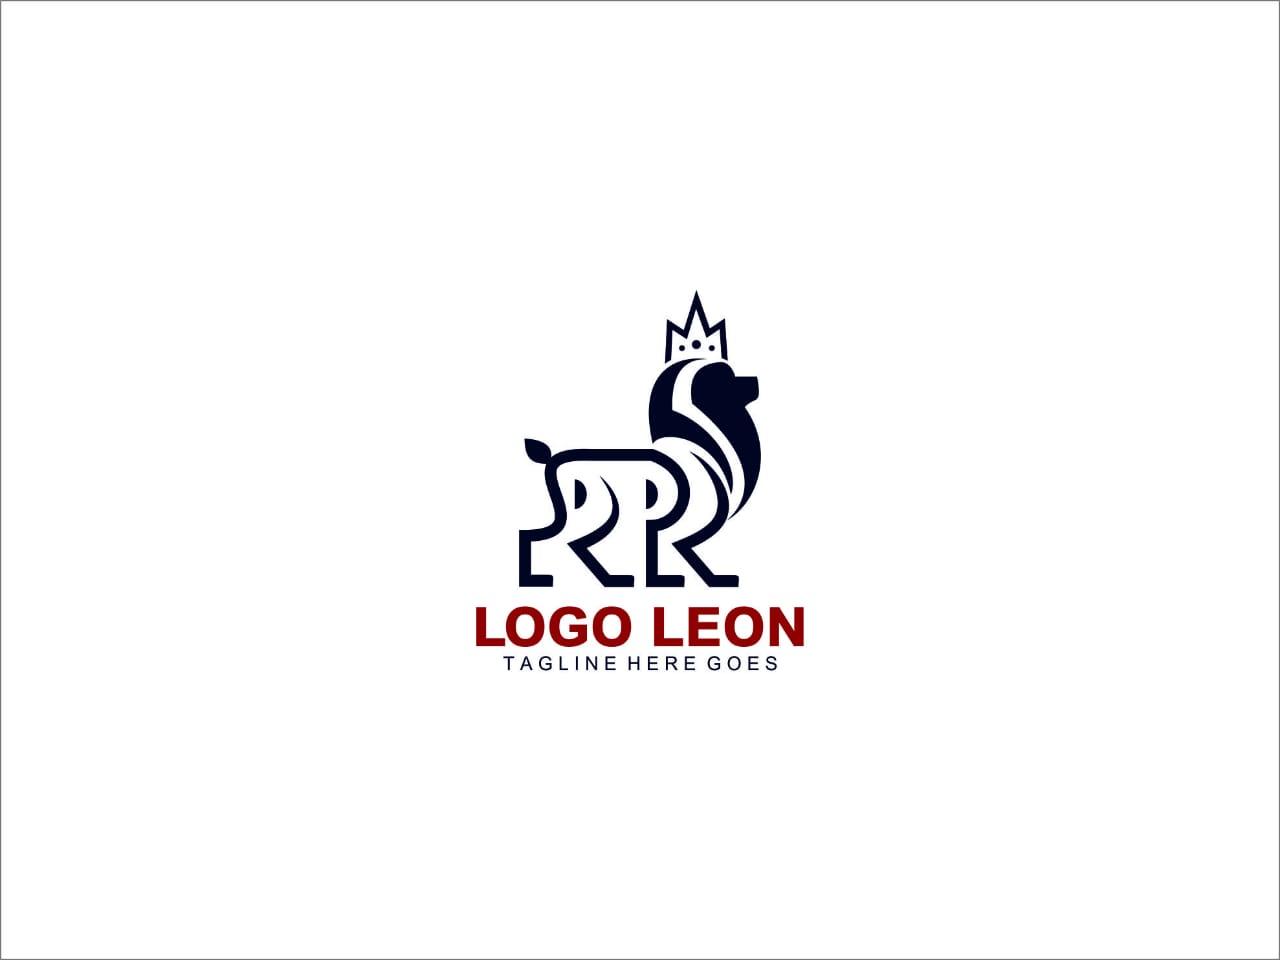 Logotipo del león Logo